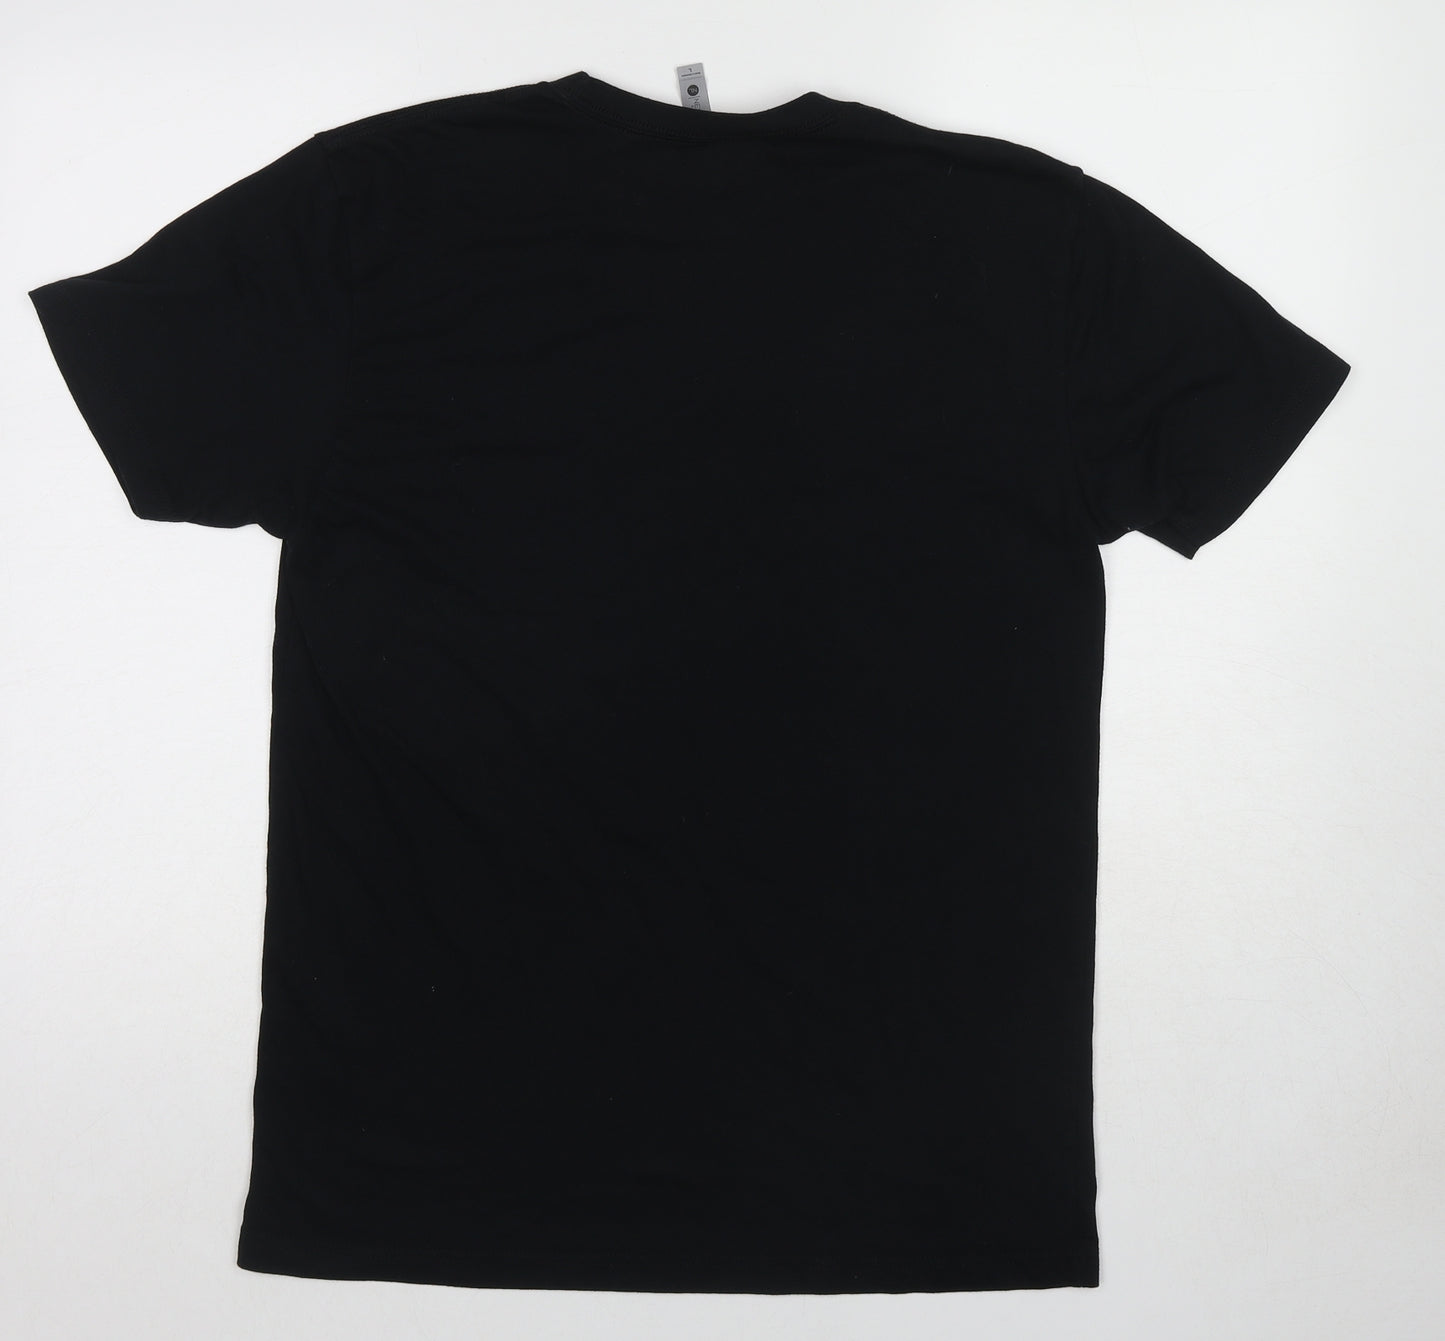 Next Level Mens Black Cotton T-Shirt Size L Round Neck